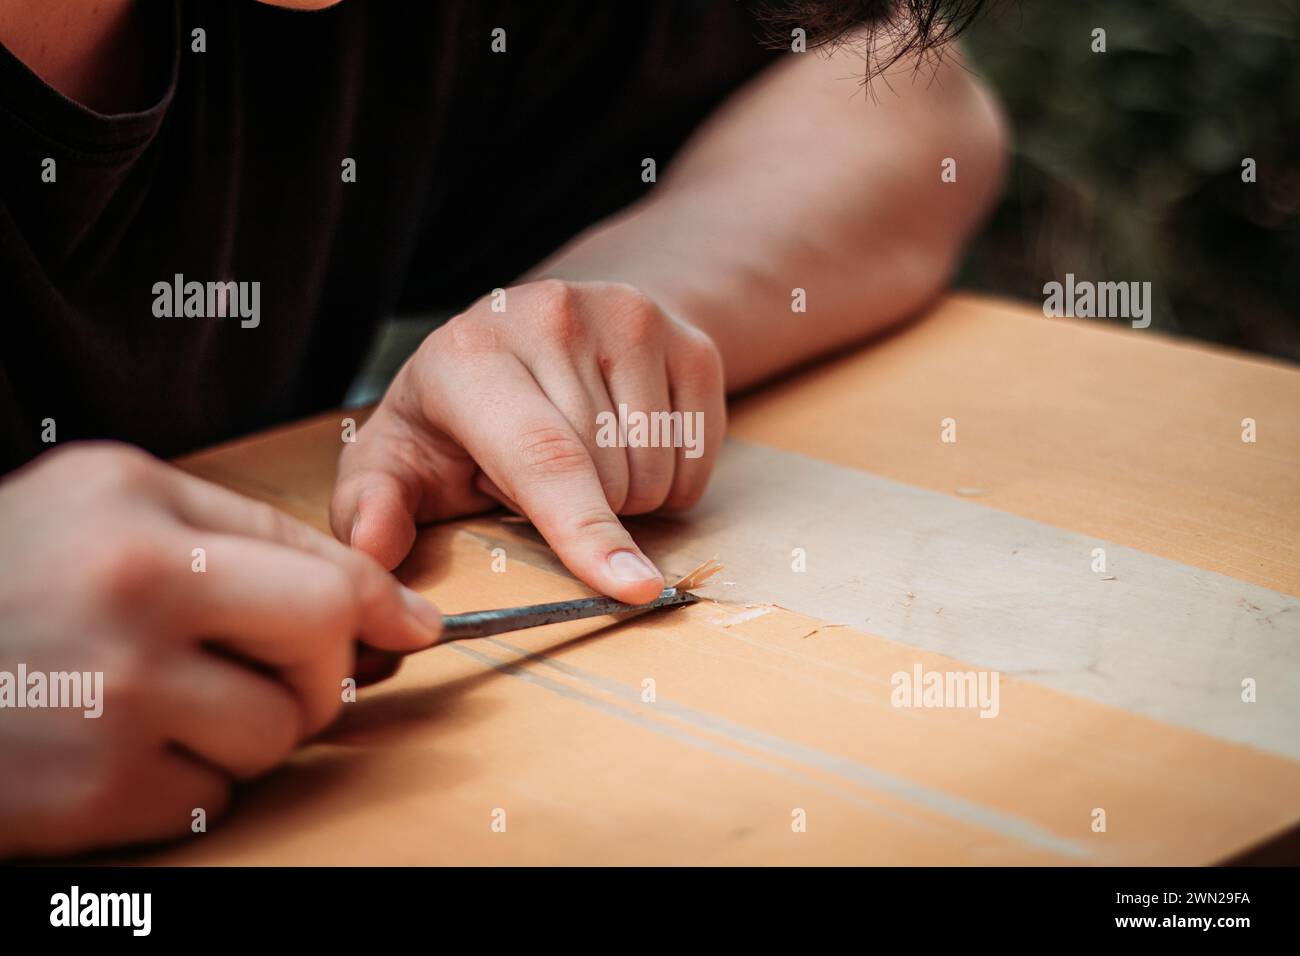 Primer plano de un adolescente usando herramientas que trabajan con sus manos aprendiendo un oficio de carpintería de madera. Foto de stock